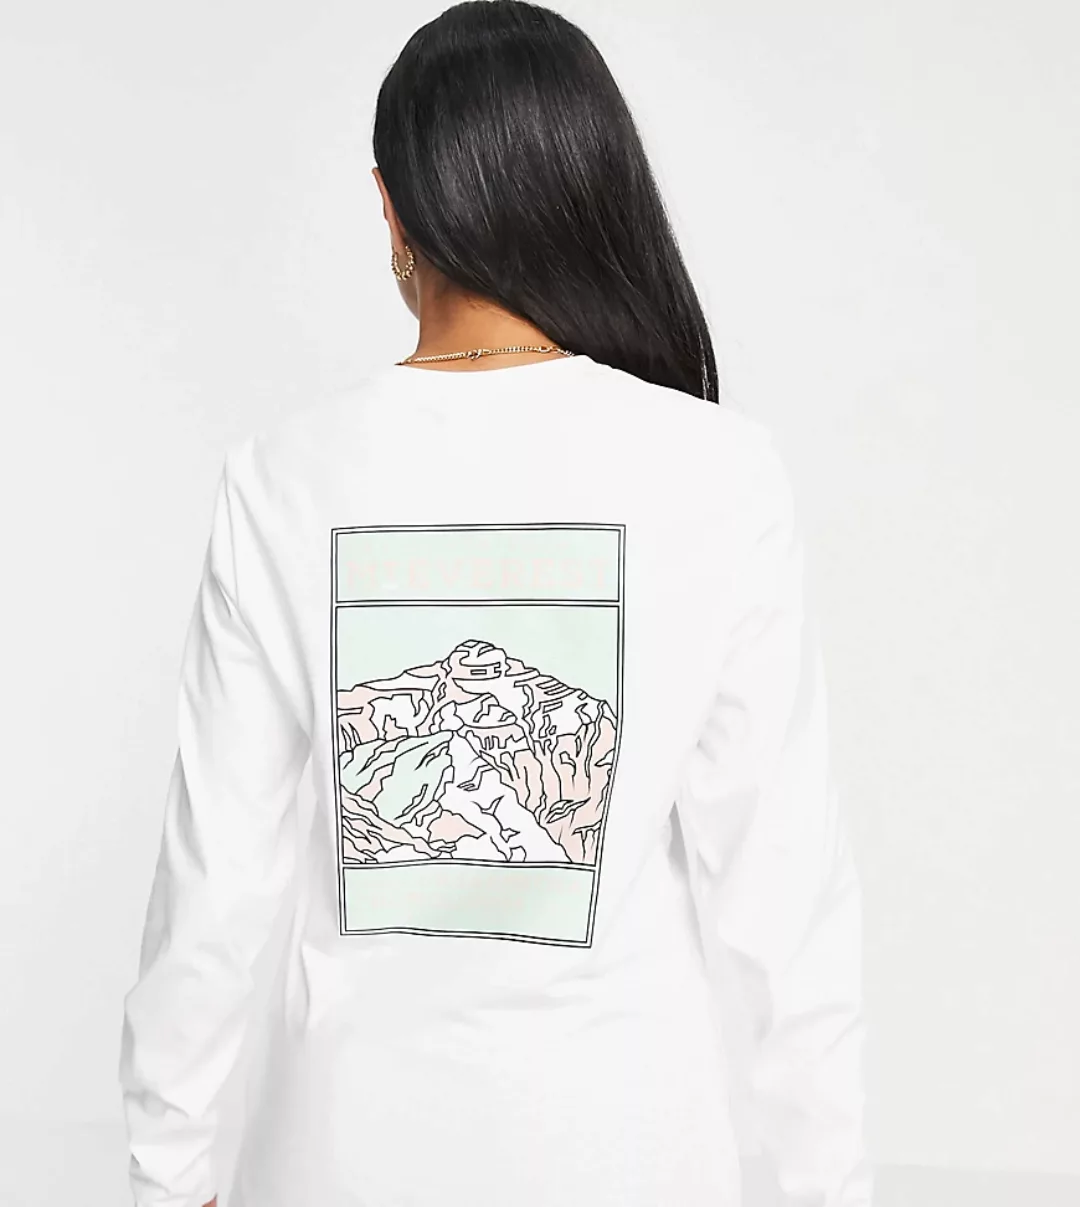 The North Face – Faces – Langärmliges Shirt in Weiß/Grün, exklusiv bei ASOS günstig online kaufen